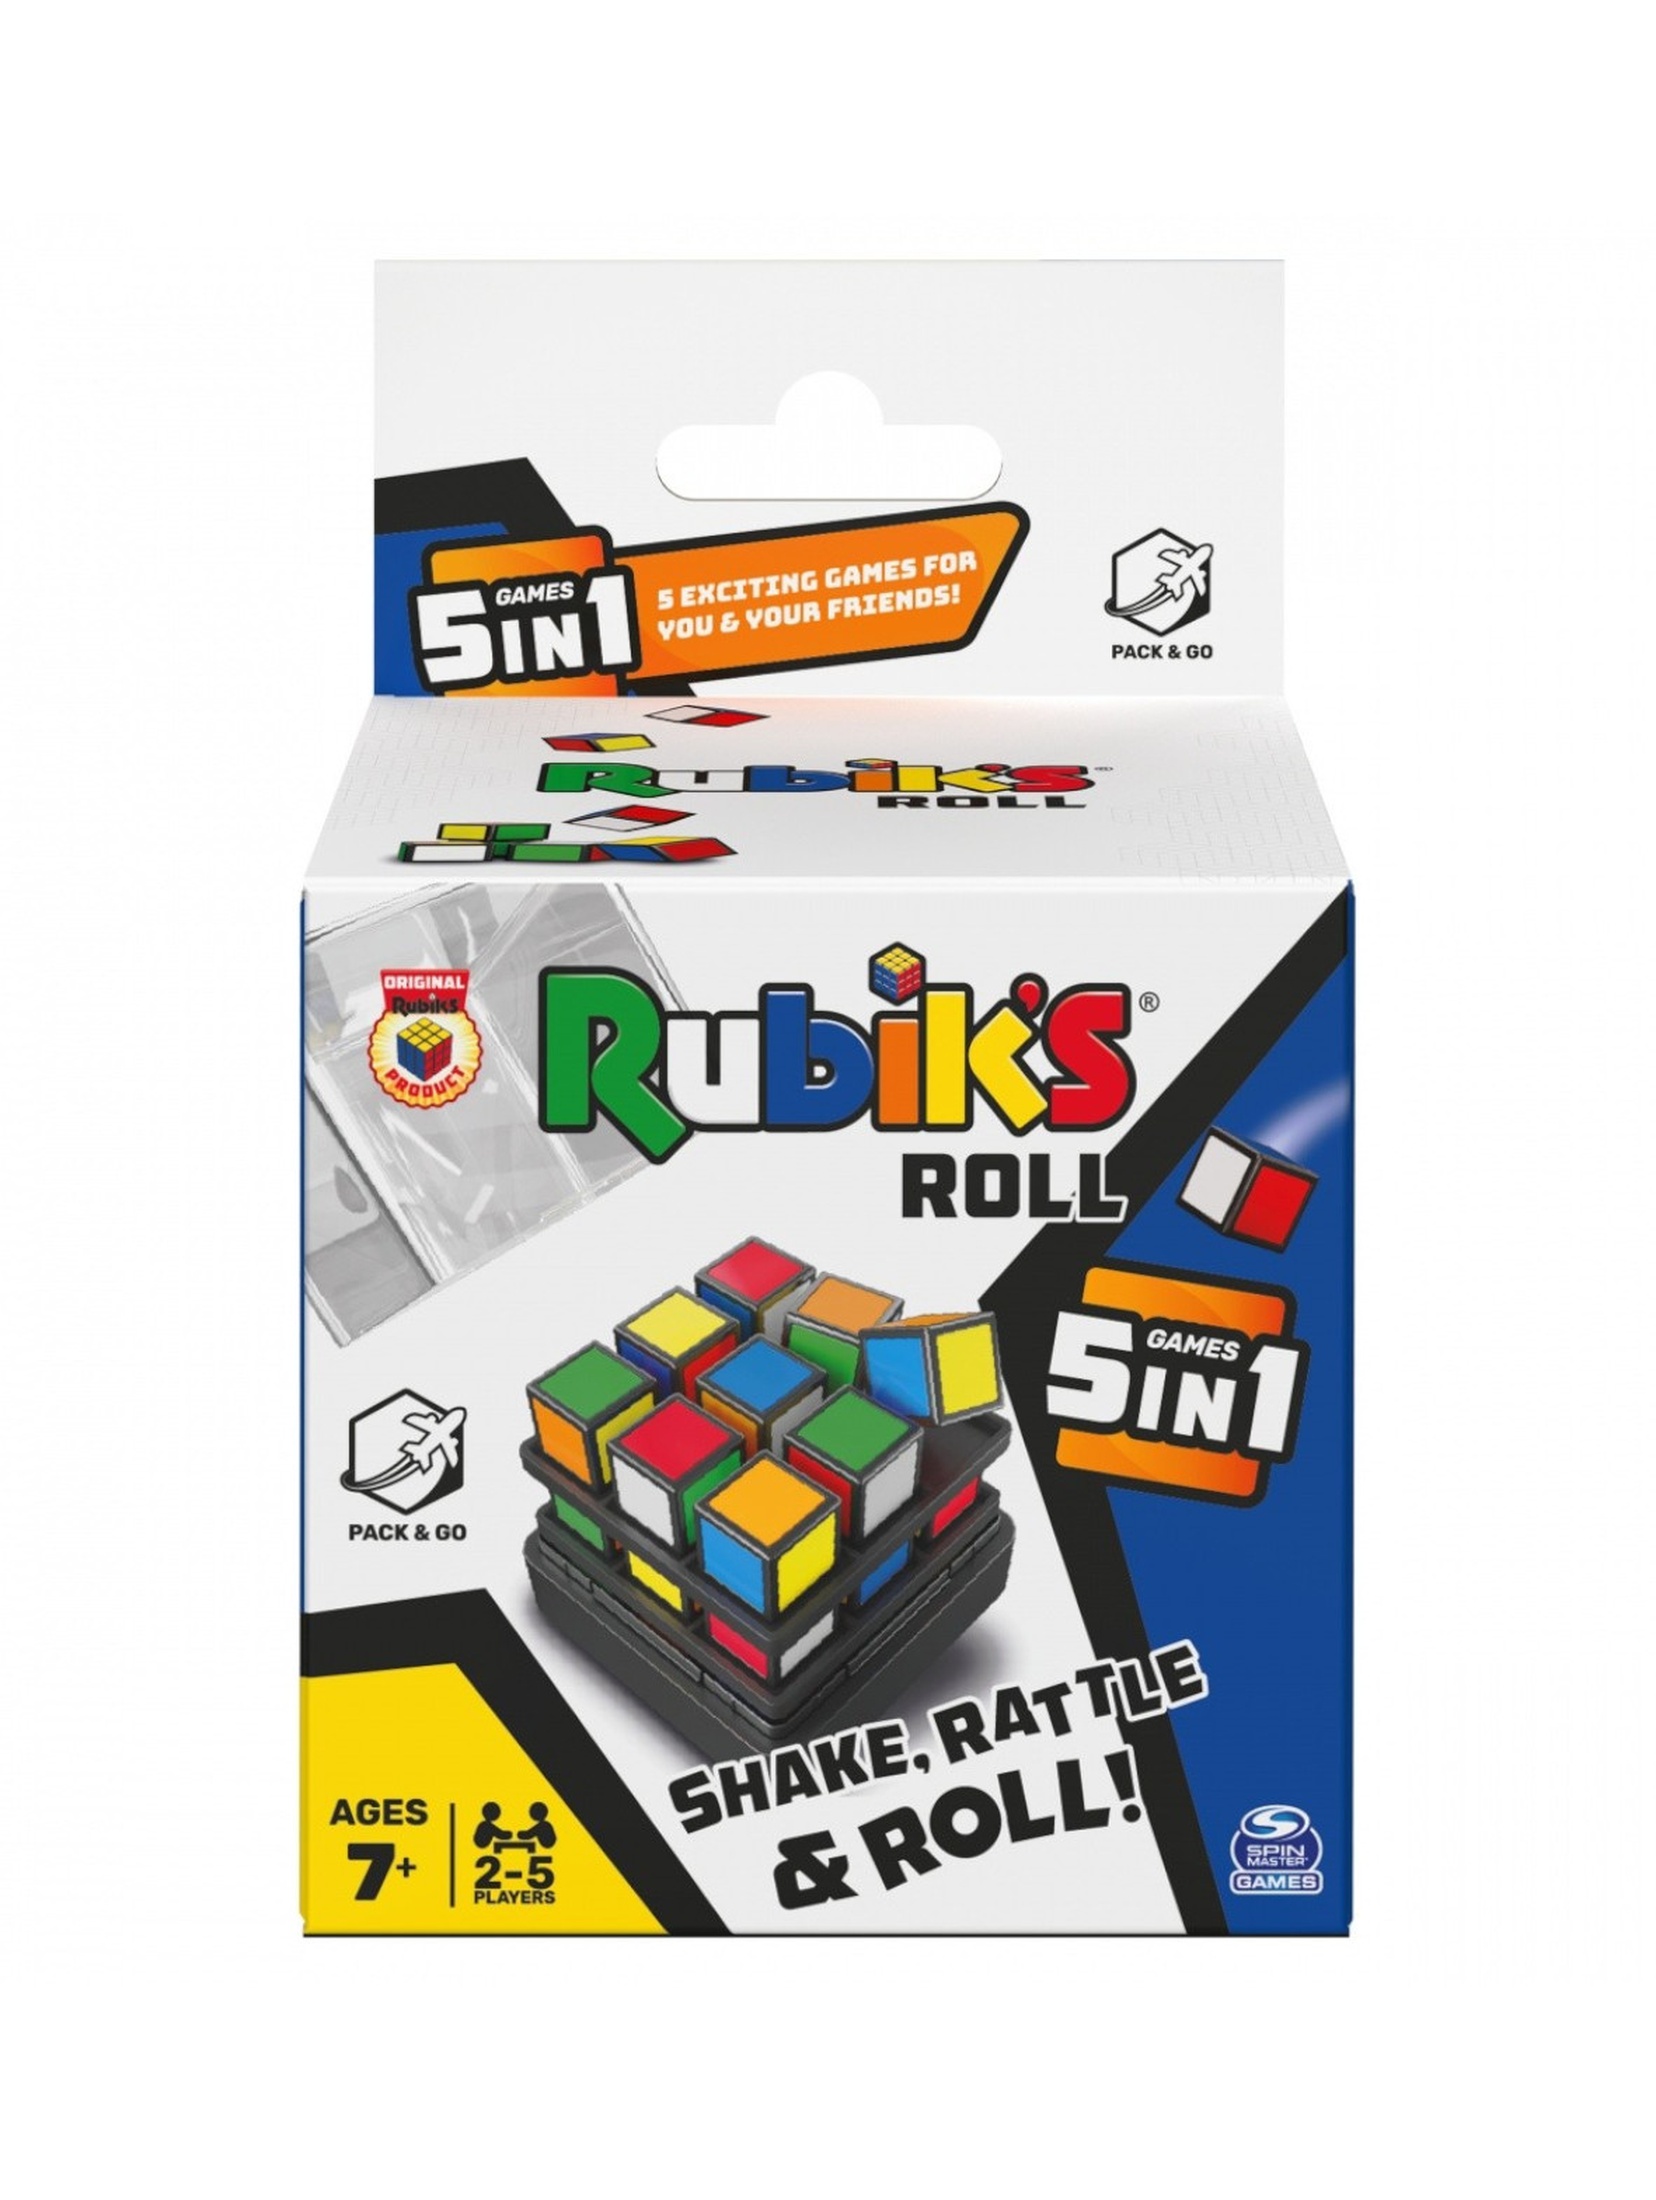 Kostka Rubika 5w1